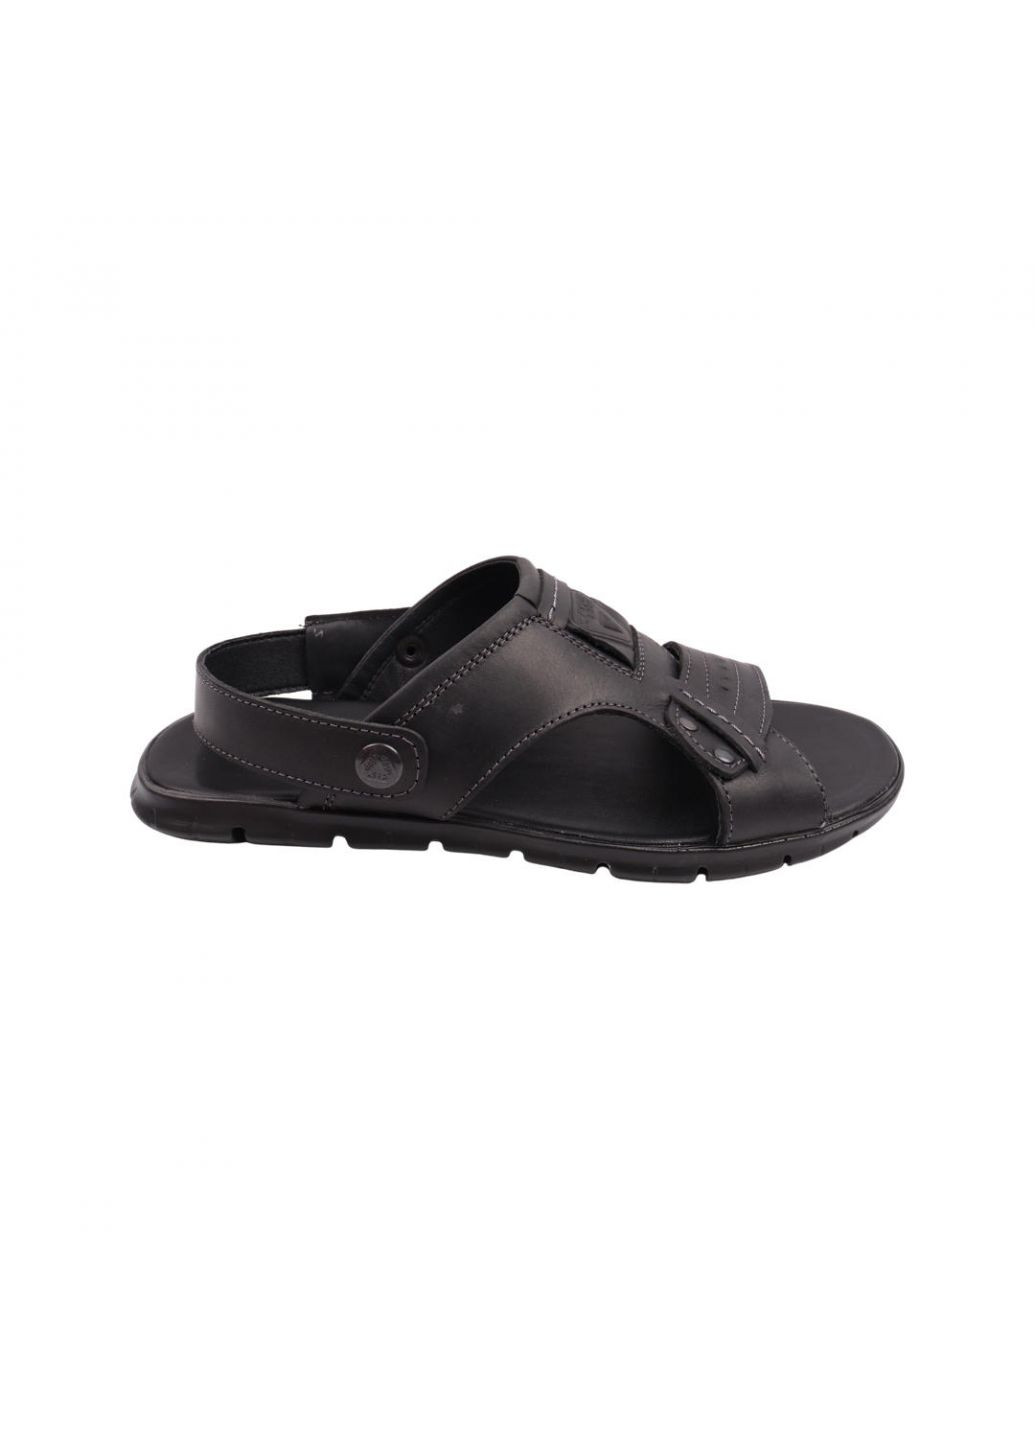 Сандалі чоловічі чорні натуральна шкіра Maxus Shoes 107-22lbc (257443637)